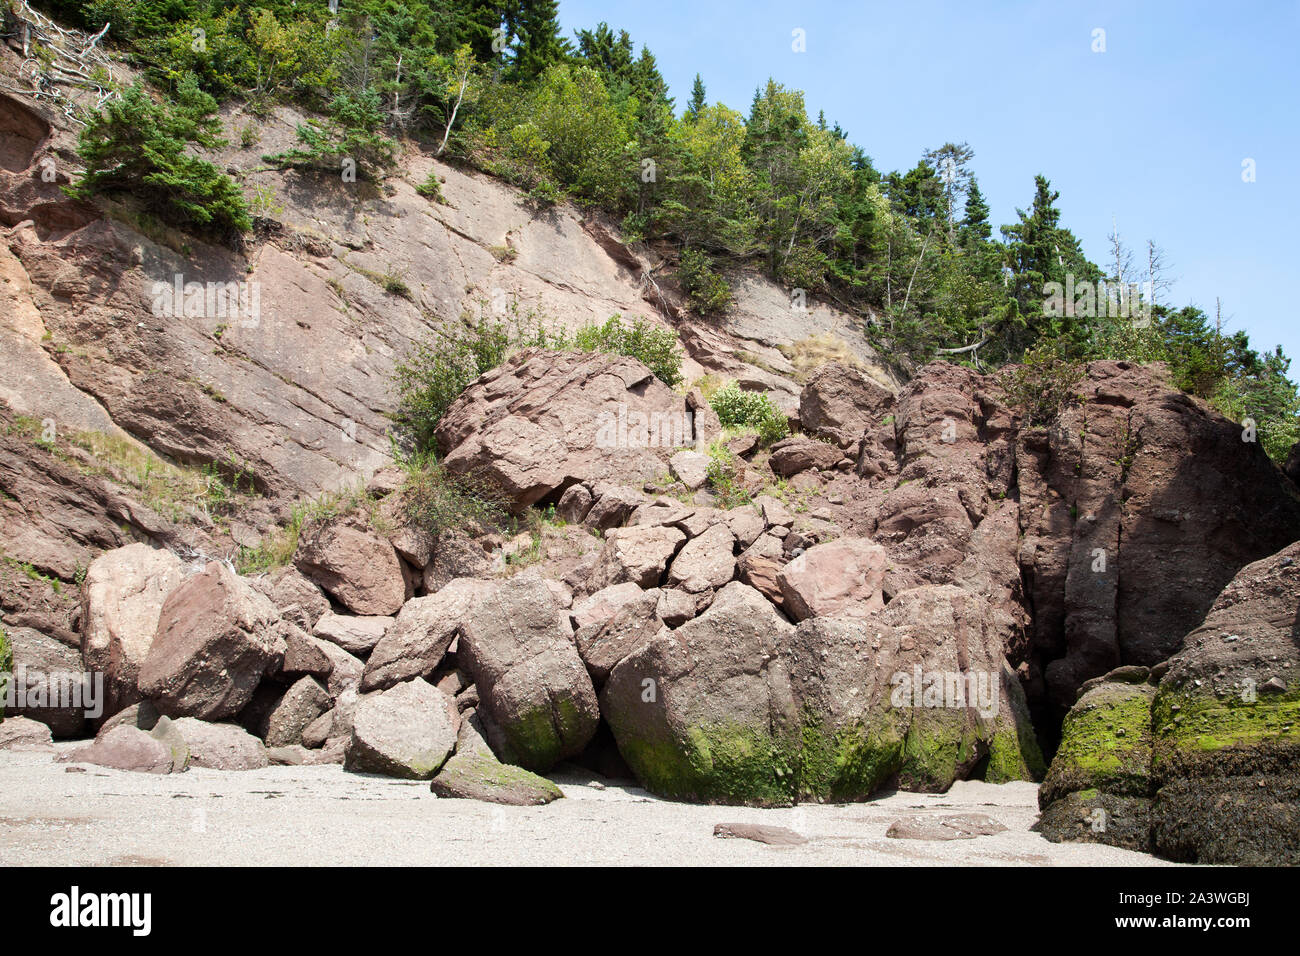 Le mur raide de roches érodées par les grandes marées dans le parc des rochers Hopewell Rocks, la destination touristique populaire au Nouveau-Brunswick (Canada). Banque D'Images